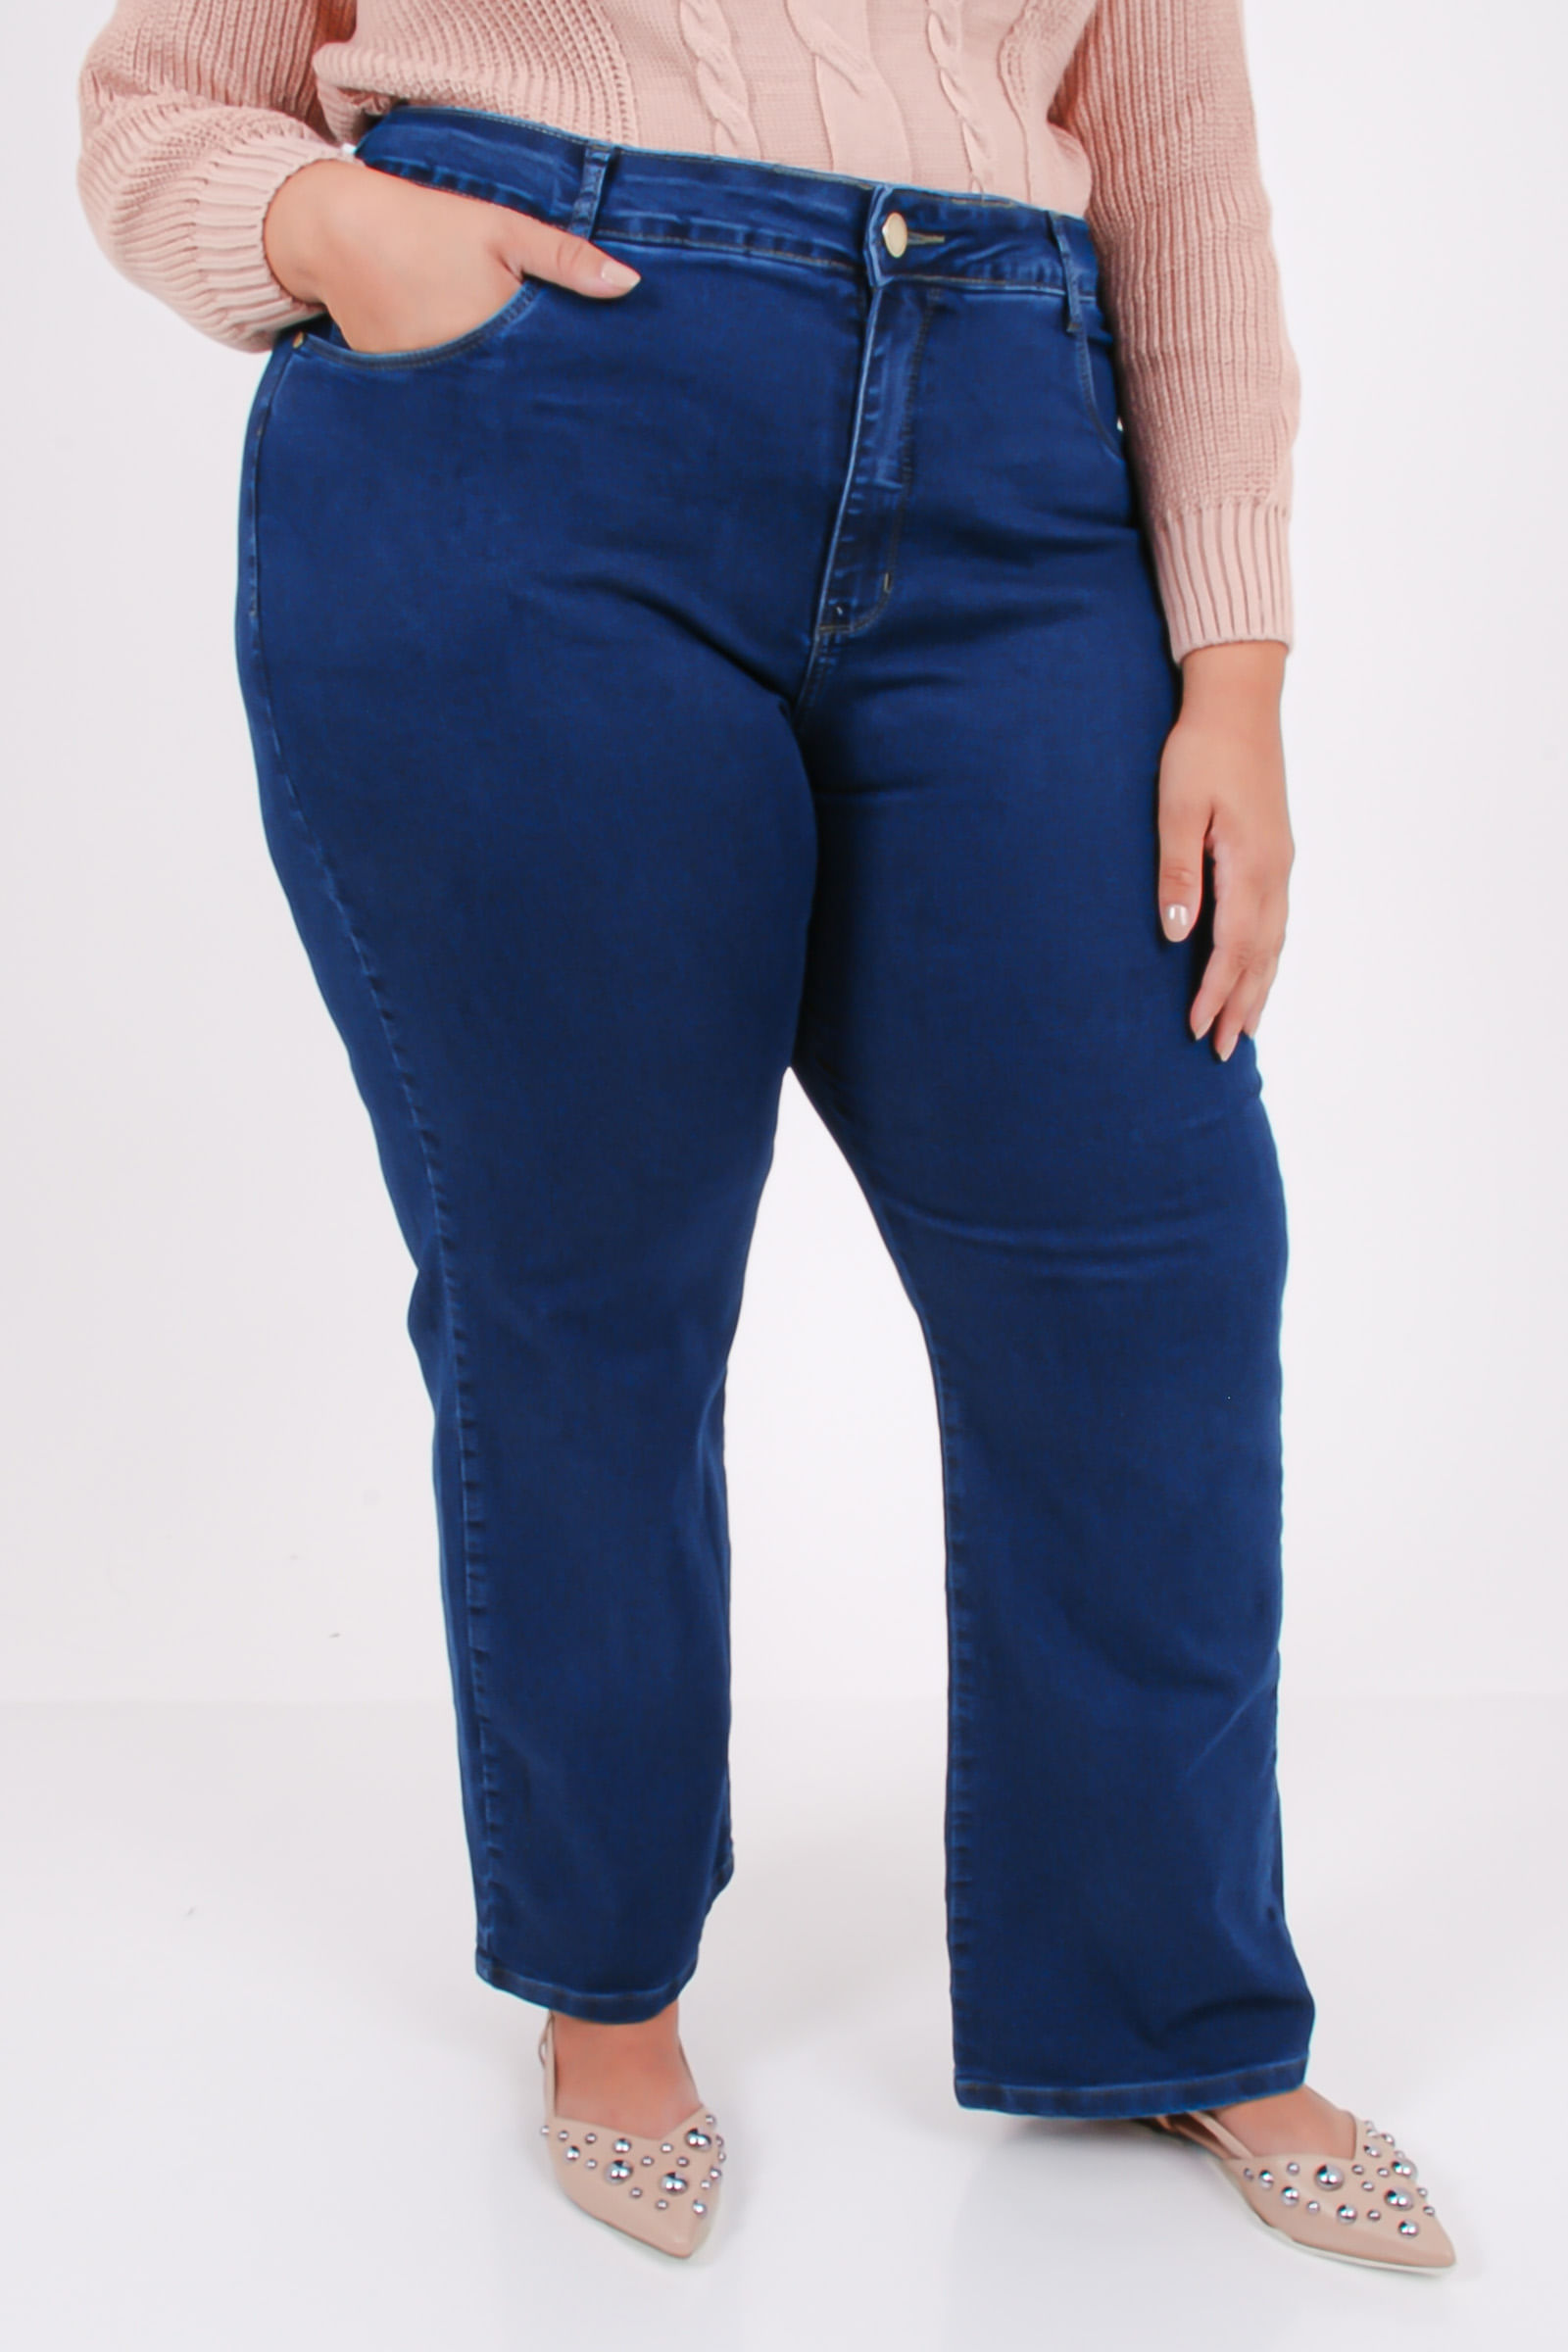 Calca-reta-blue-jeans-elastano-feminina_0102_1